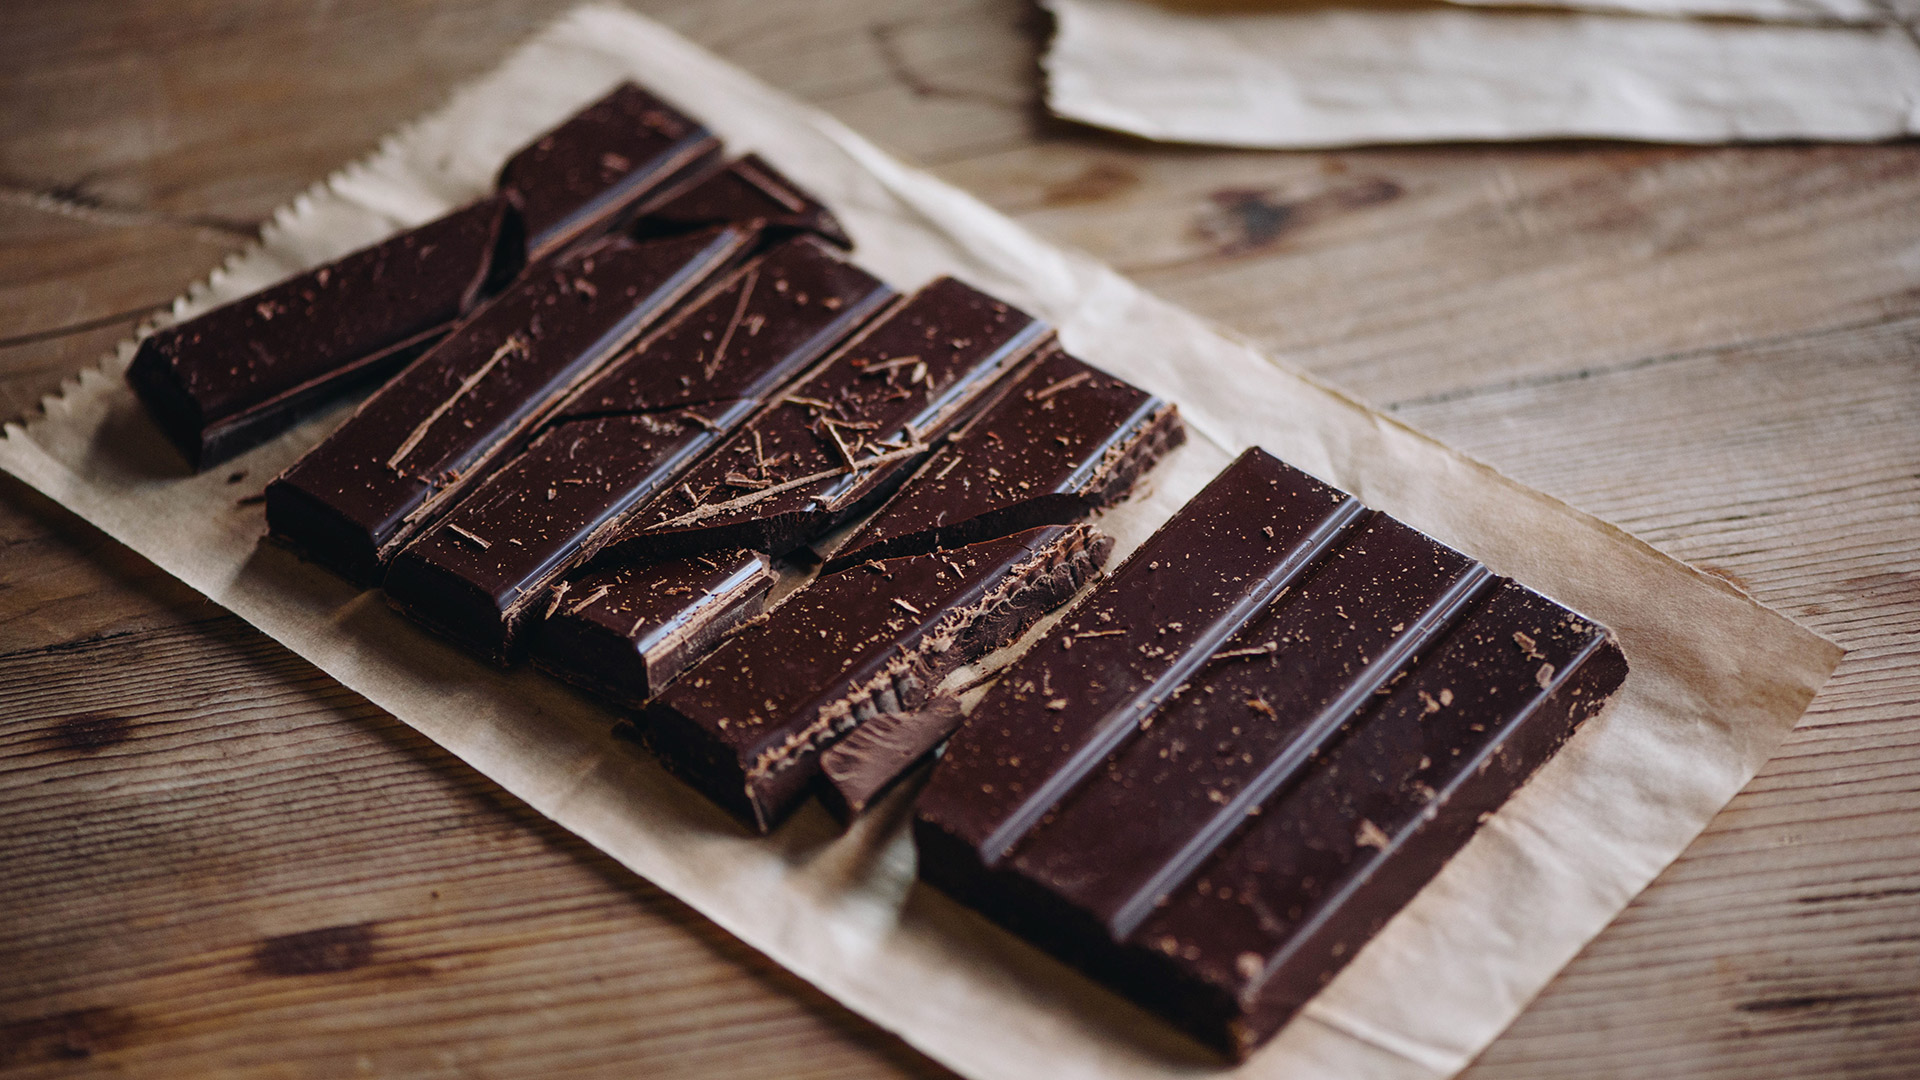 El chocolate tiene un alto contenido en flavonoides, un compuesto natural que tiene efectos antioxidantes extremadamente potentes (Getty Images)